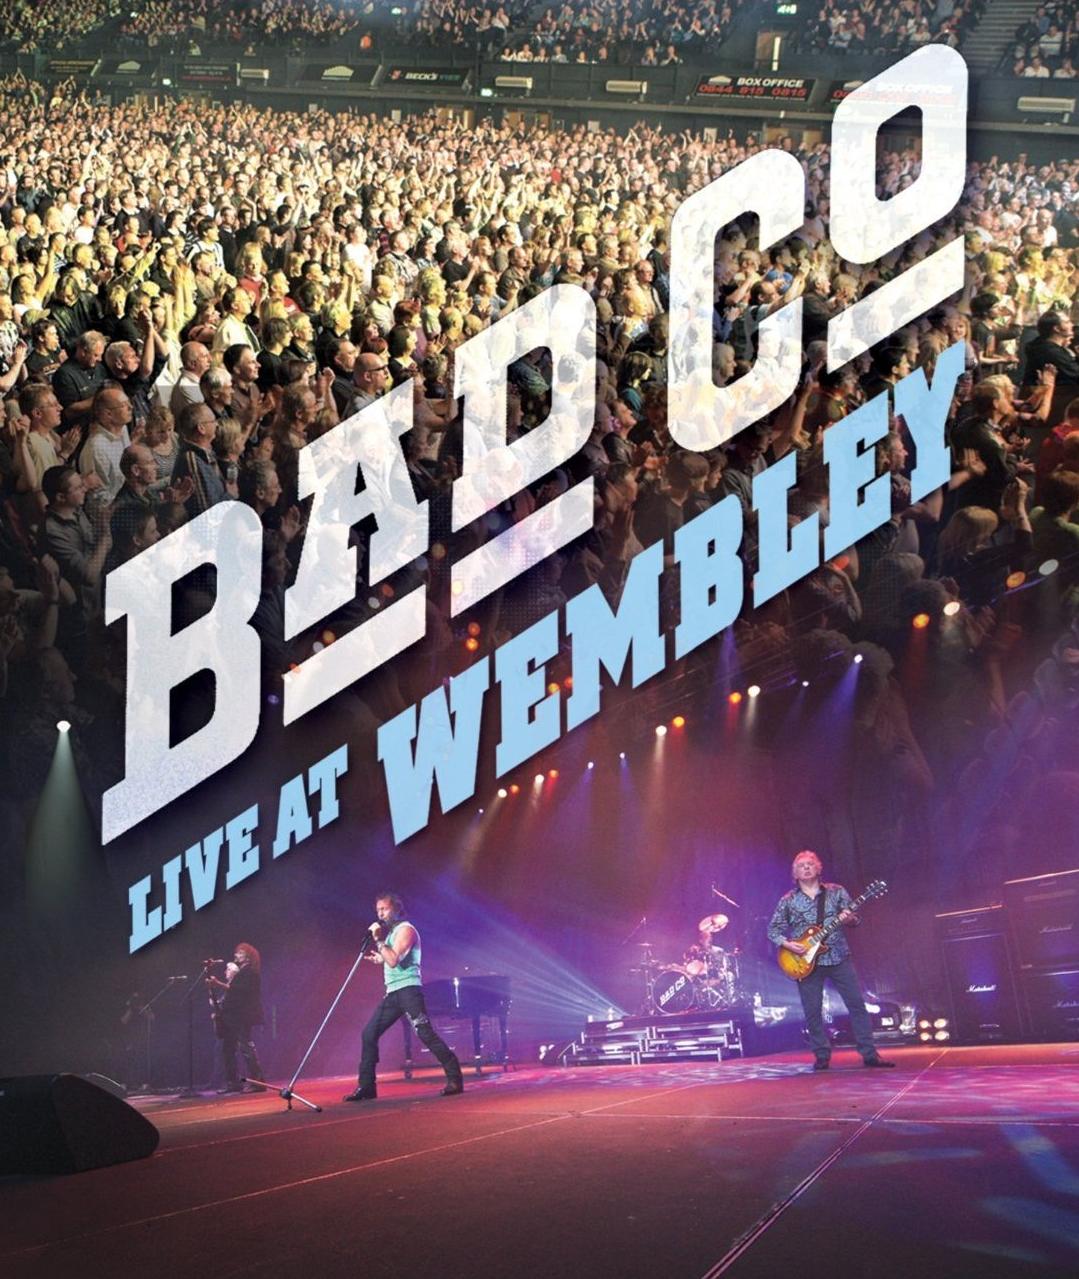 BAD COMPANY - Live At Wembley cover 